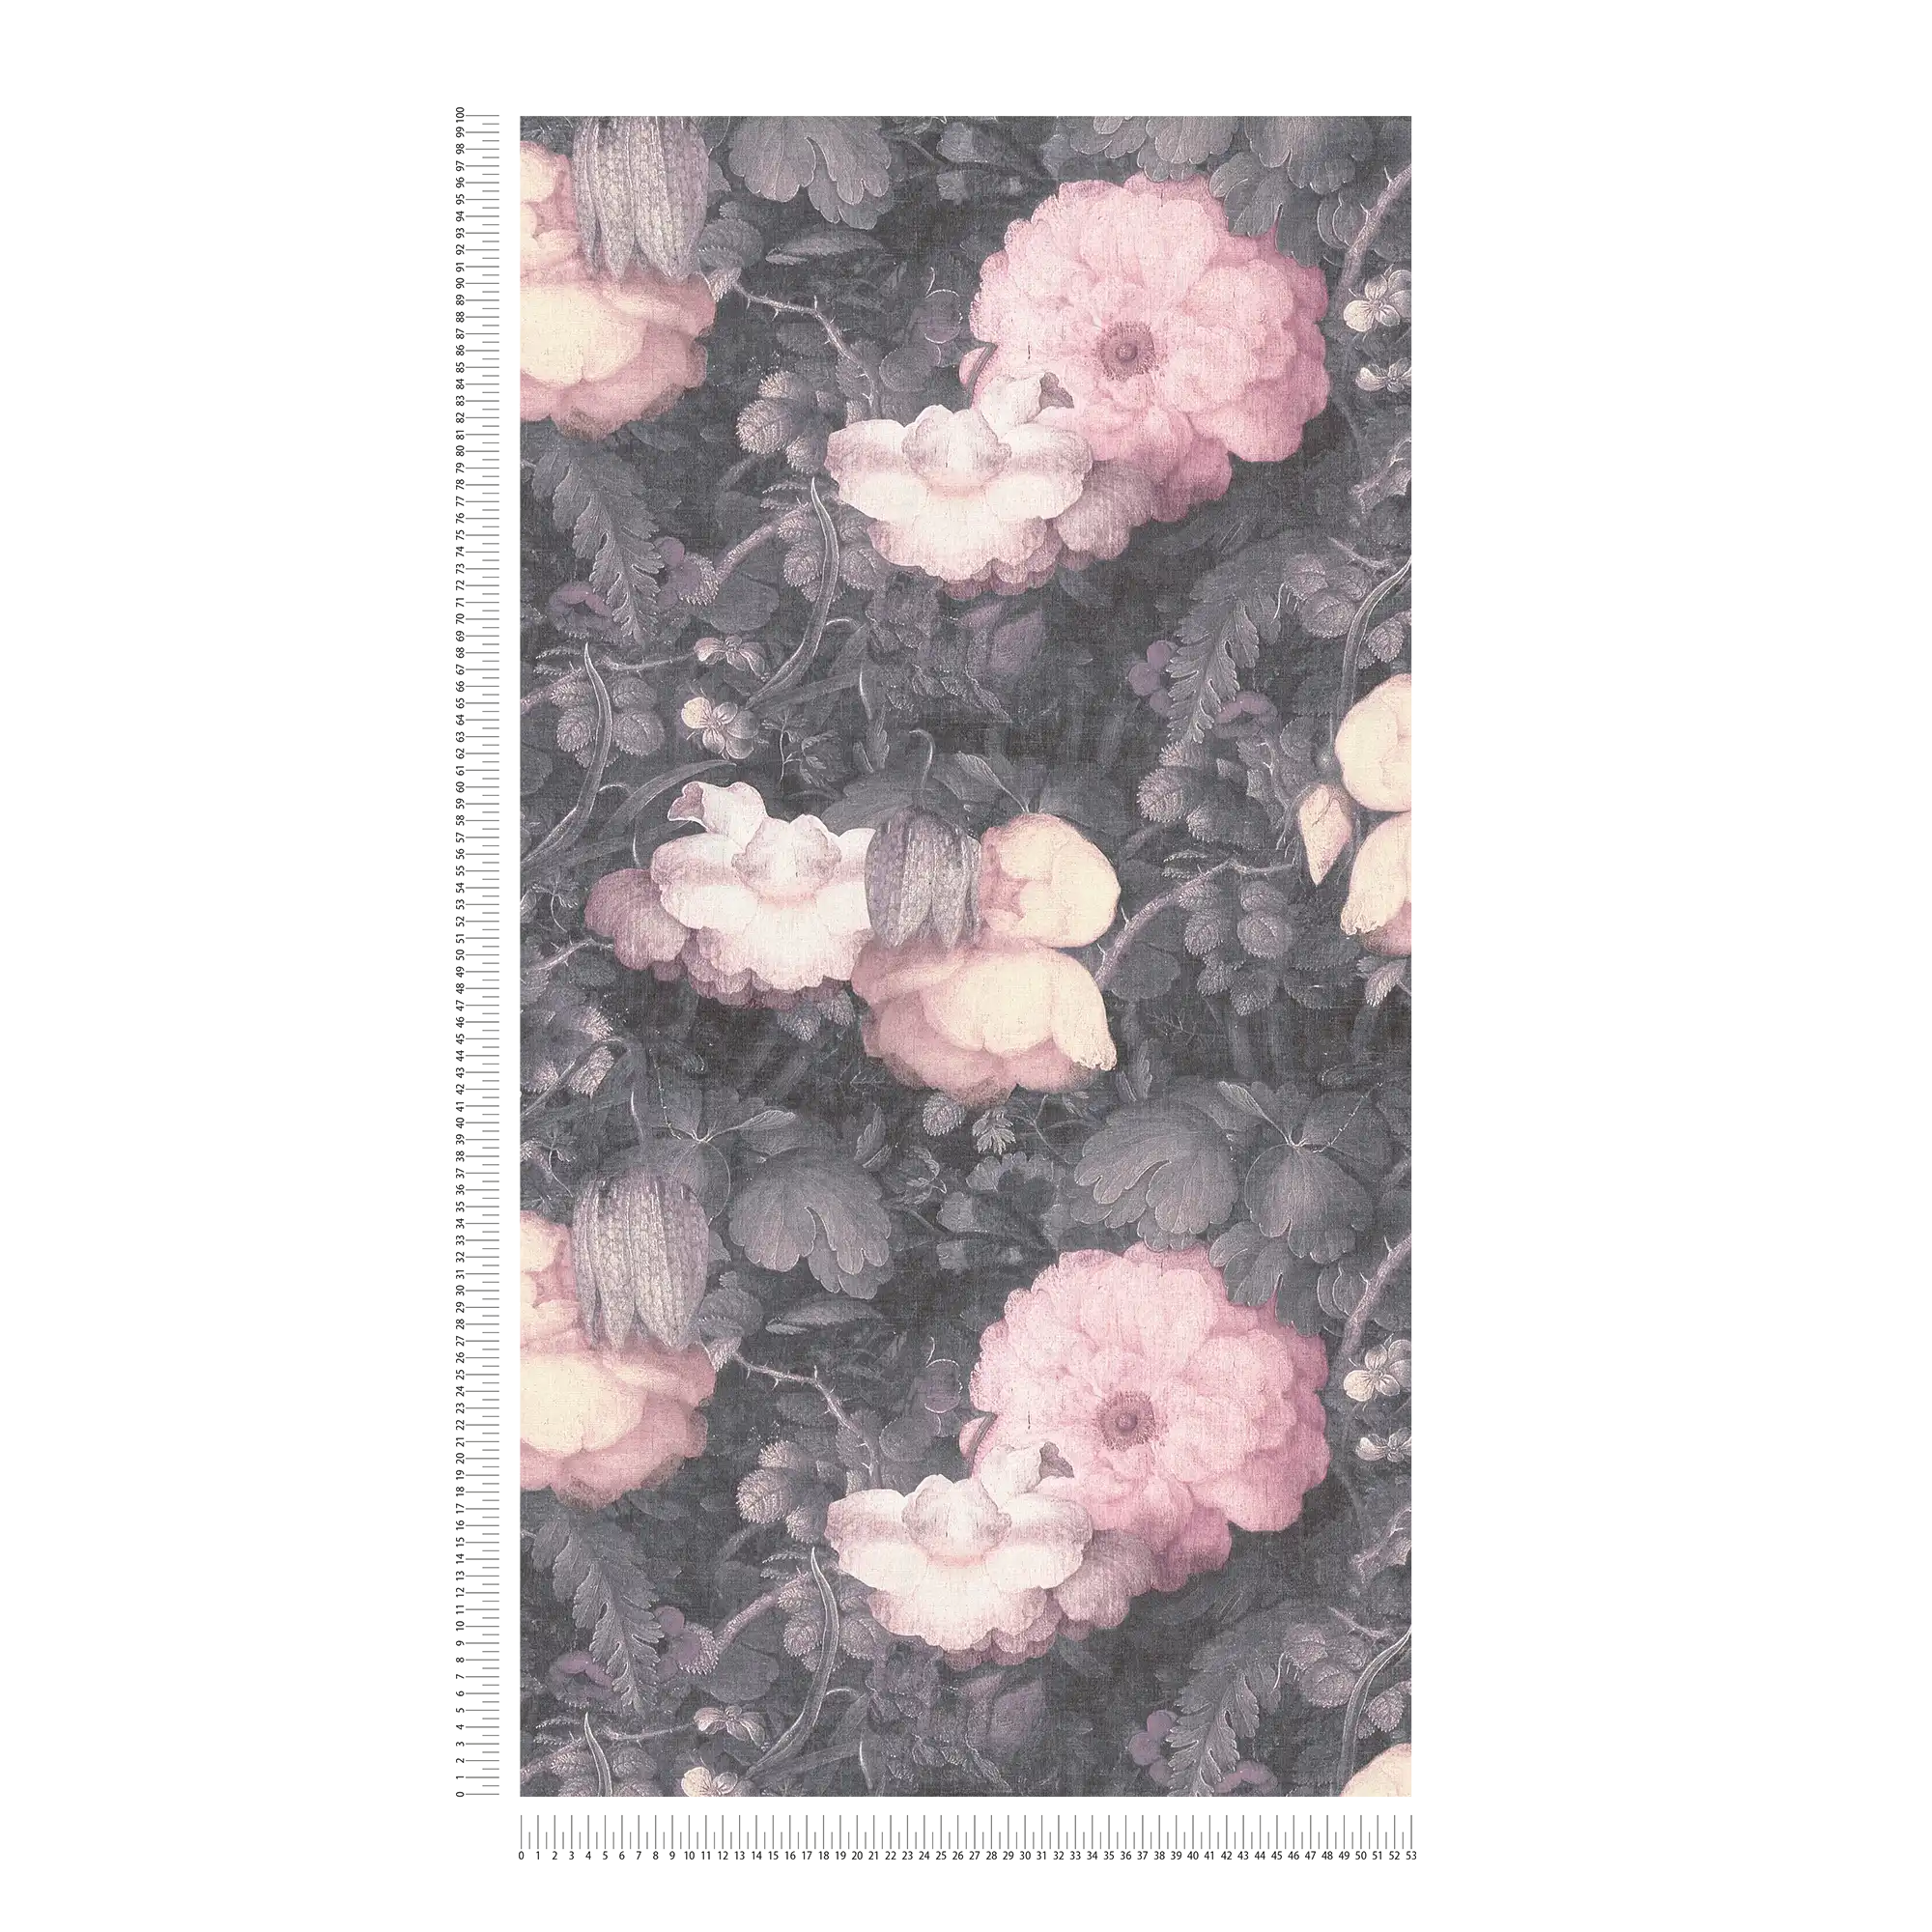             Bloemenbehang in schilderstijl, canvas look - grijs, roze, zwart
        